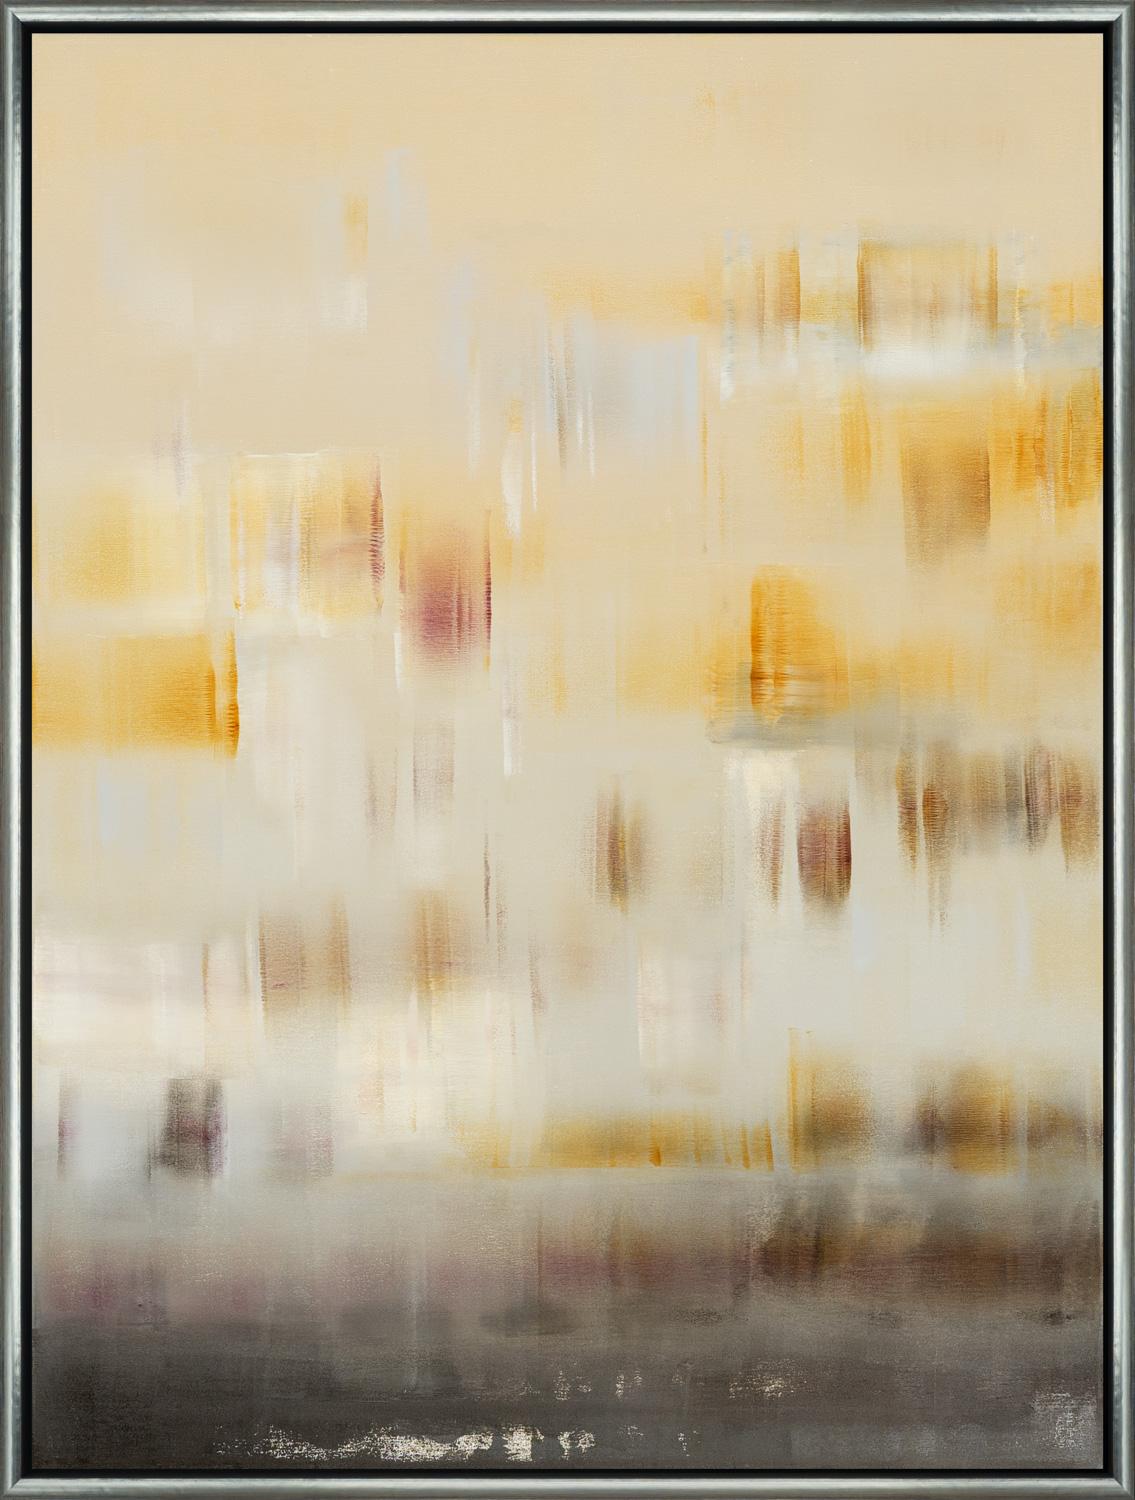 "The Wind Song I" ist ein gerahmtes Öl auf Leinwand Gemälde von Shivani Dugar, mit abstrakten Formen und einer Mischung aus warmen gelben Ocker- und tiefen Violetttönen. Dugars Farbauftrag schafft ein Gleichgewicht mit reicher Textur, wobei die